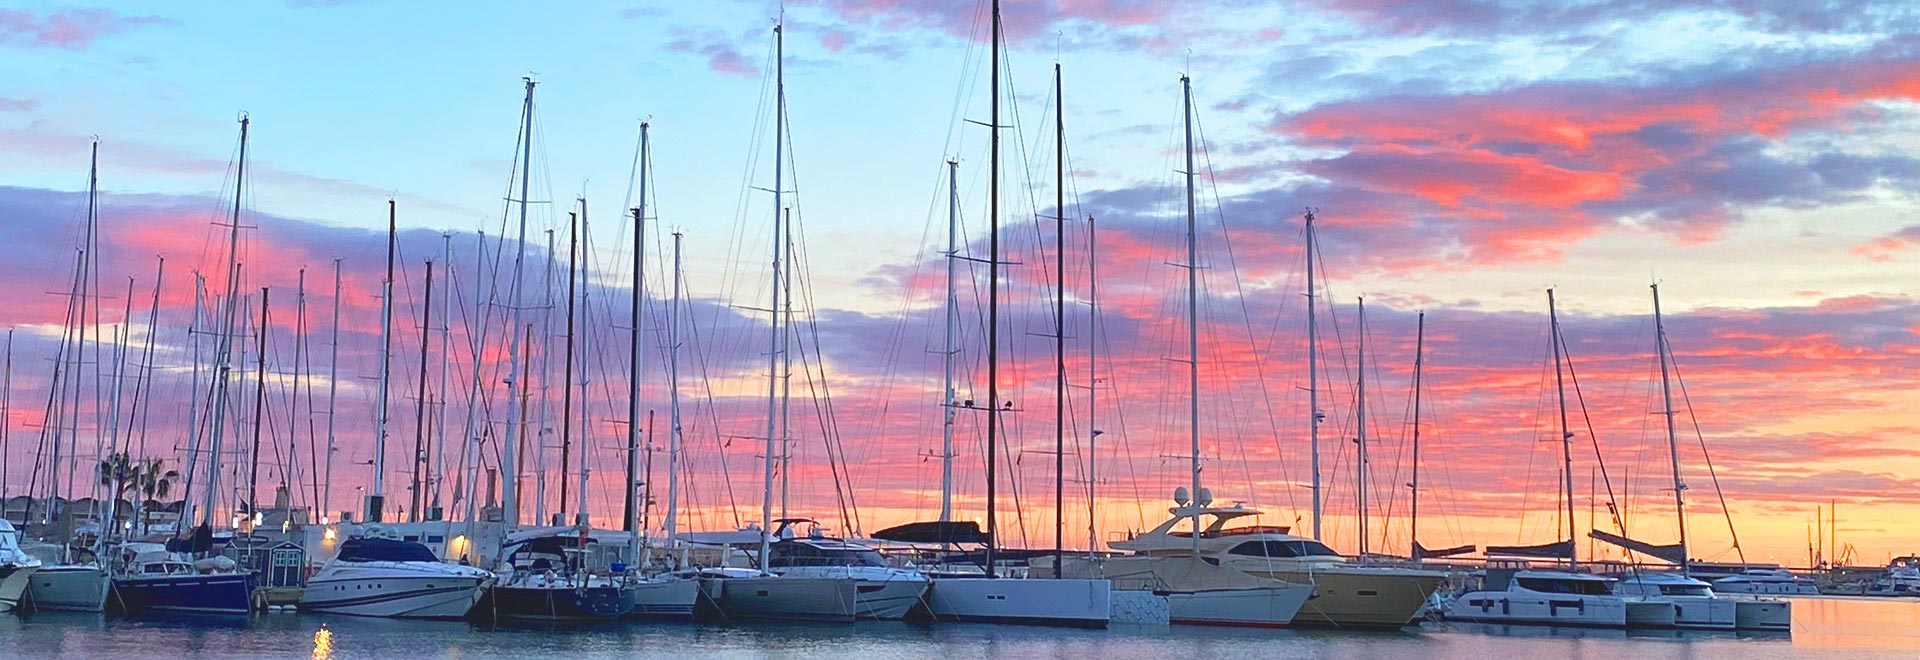 Hafen von Palma - Yachten an der Pier mit Farbenspiel des Himmels am Abend